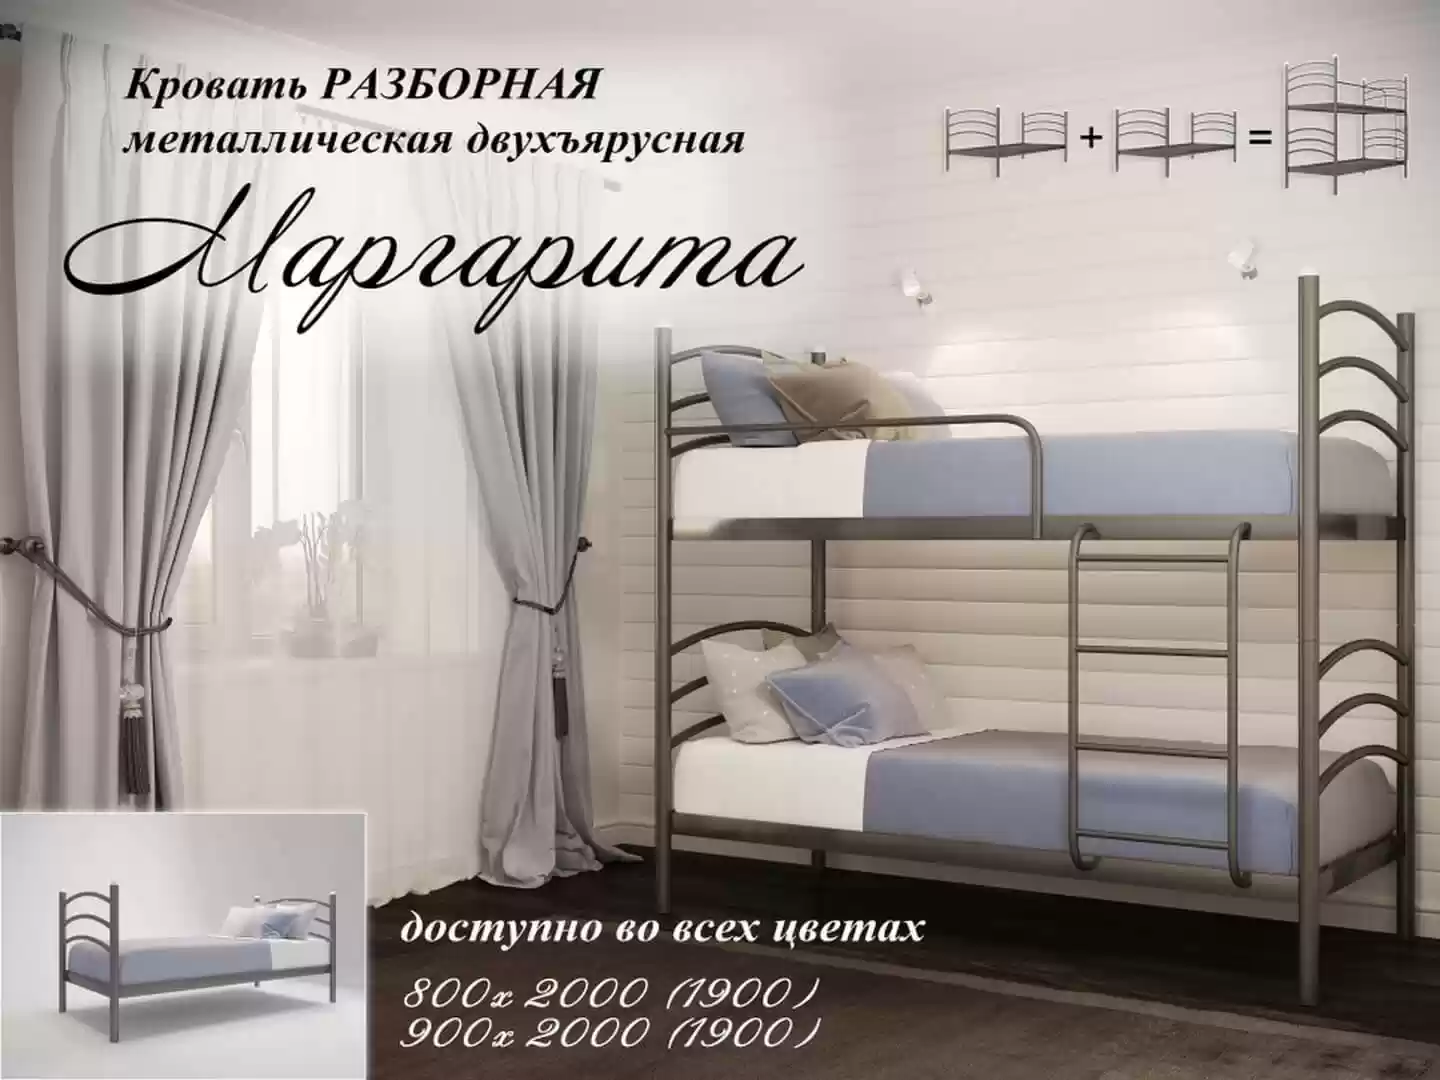 Двуярусная кровать Маргарита 800х2000 (1900)